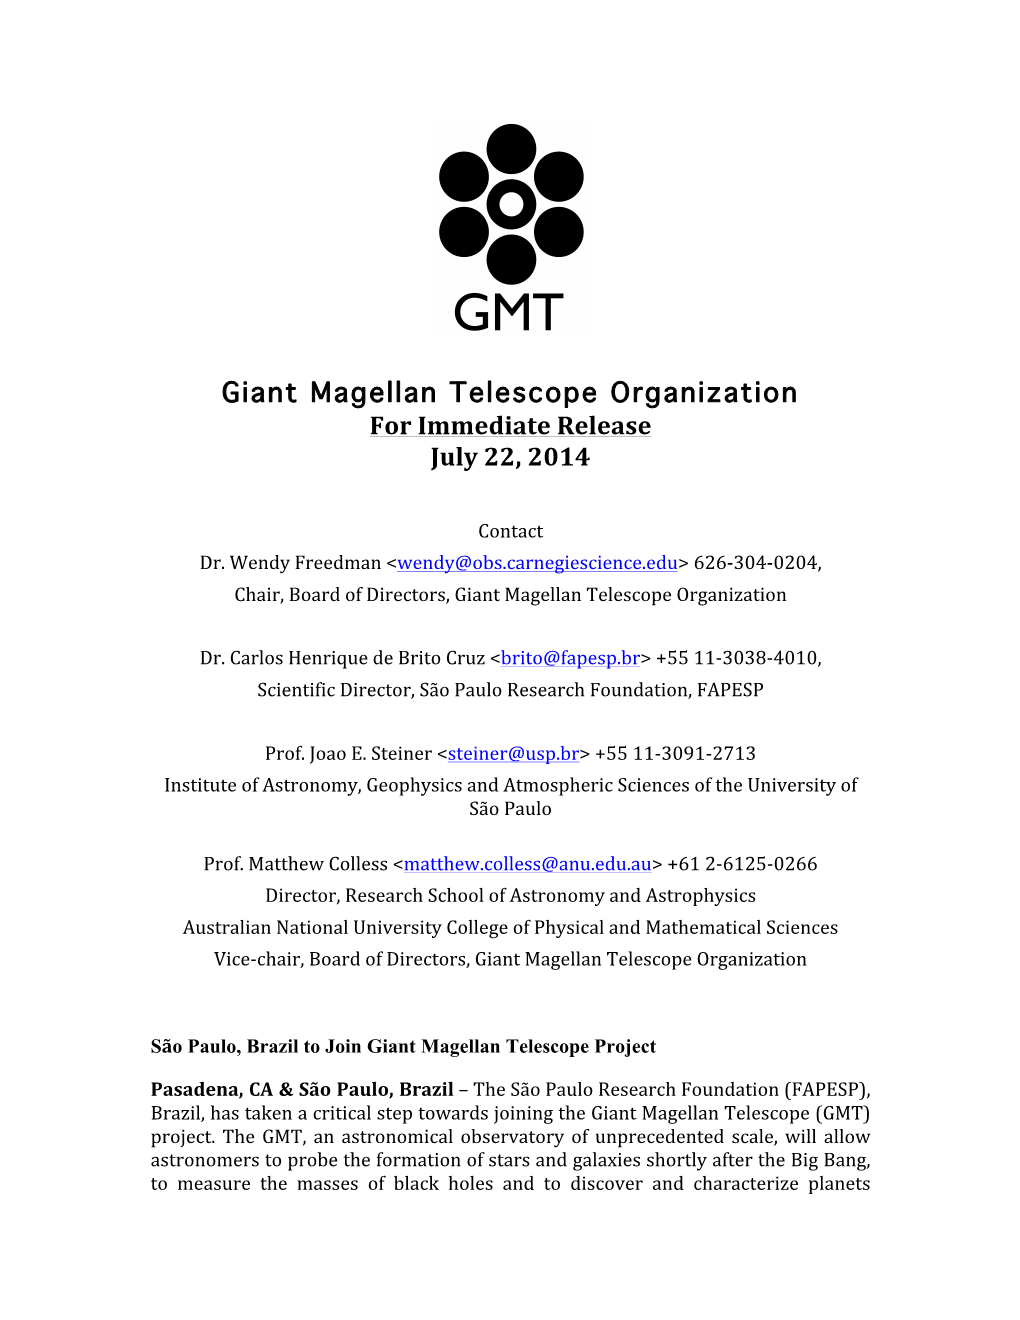 Giant Magellan Telescope Organization for Immediate Release July 22, 2014